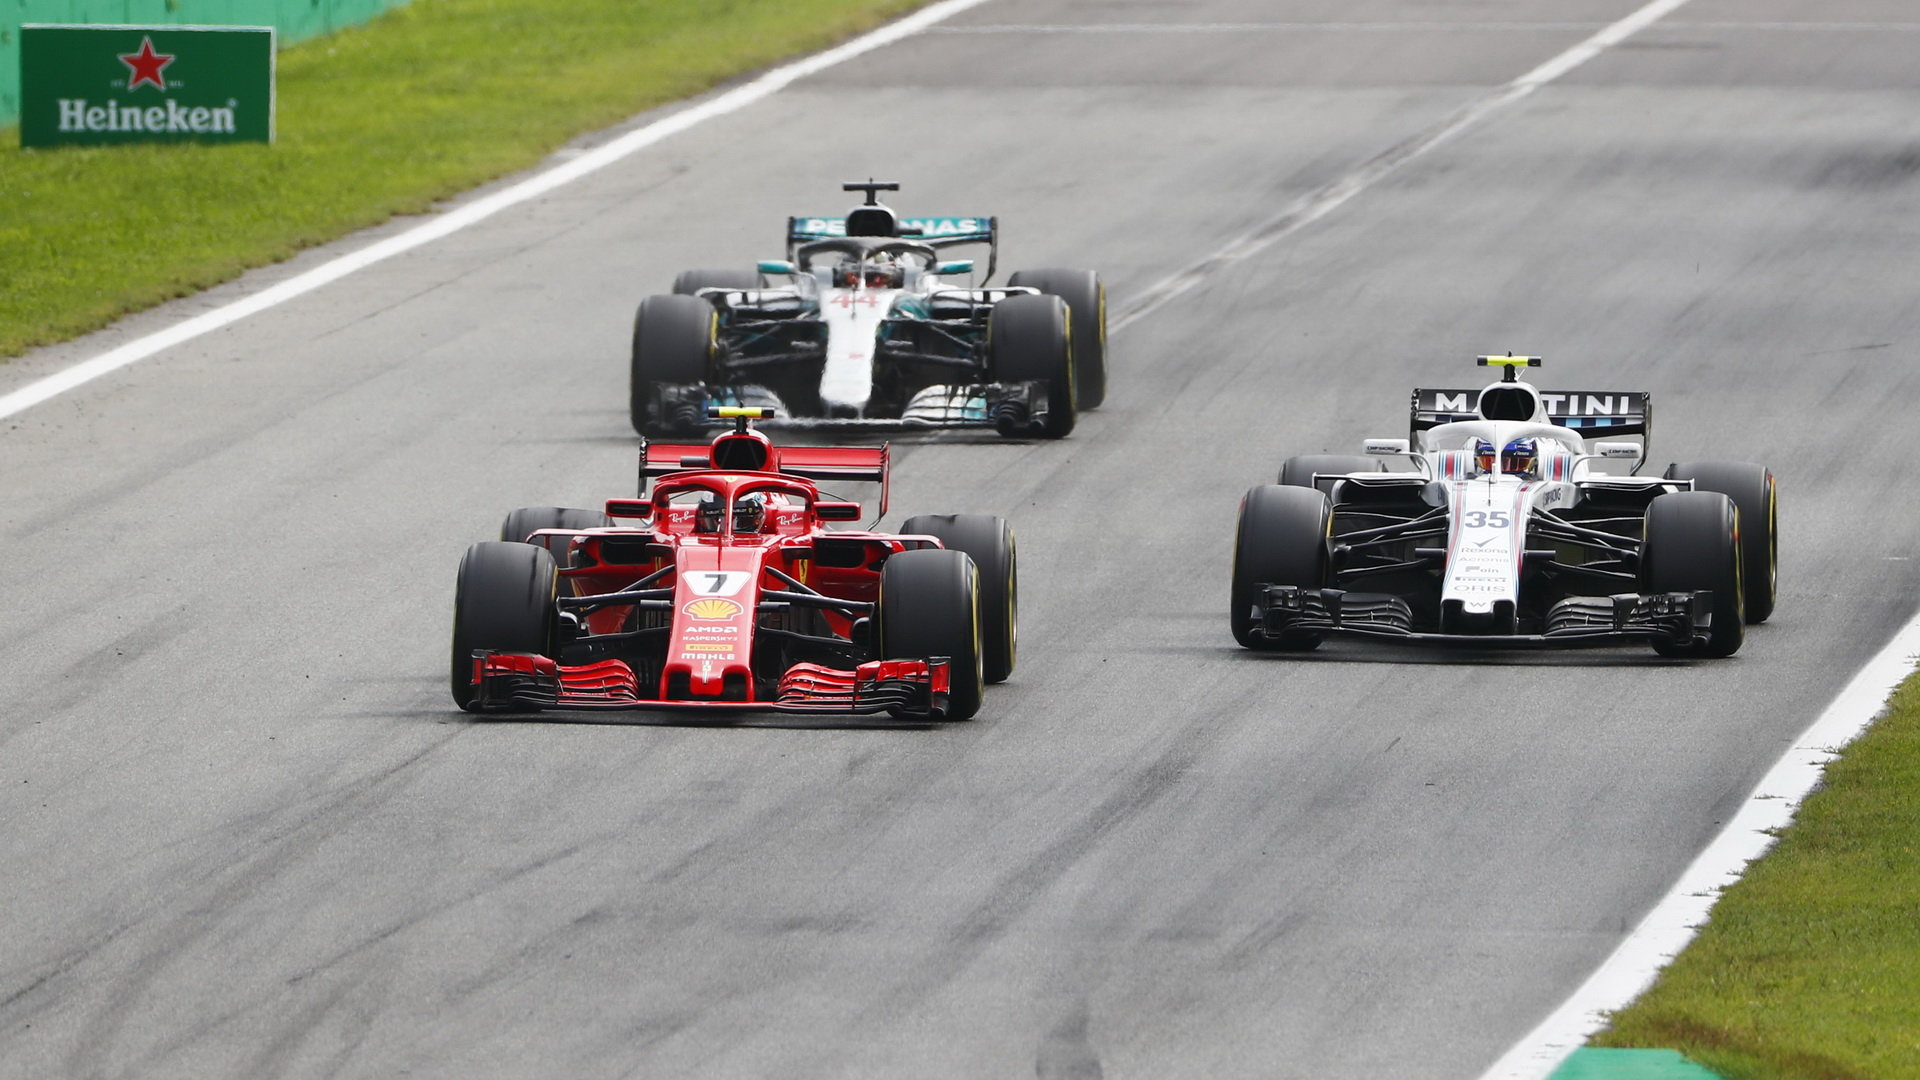 Sergej Sirotkin, Lewis Hamilton a Kimi Räikkönen na pódiu po závodě v Monze